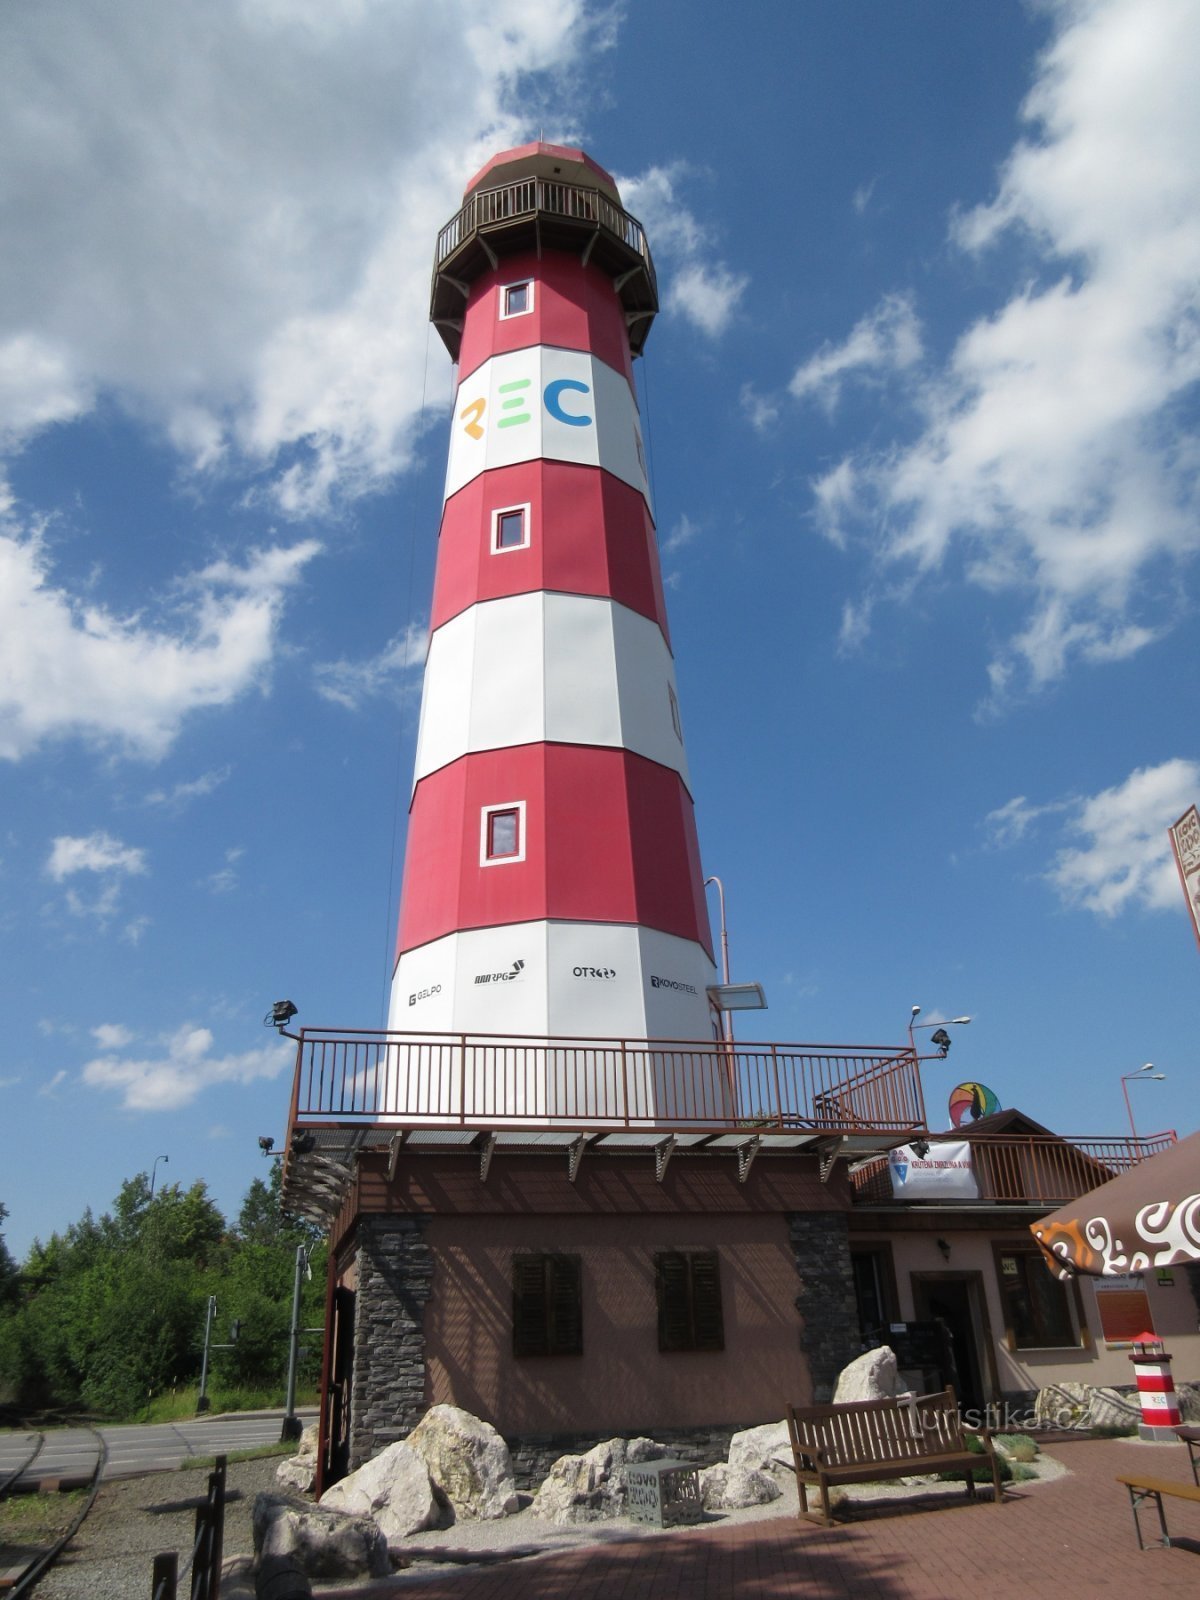 The Old Town and Šrotík lighthouse